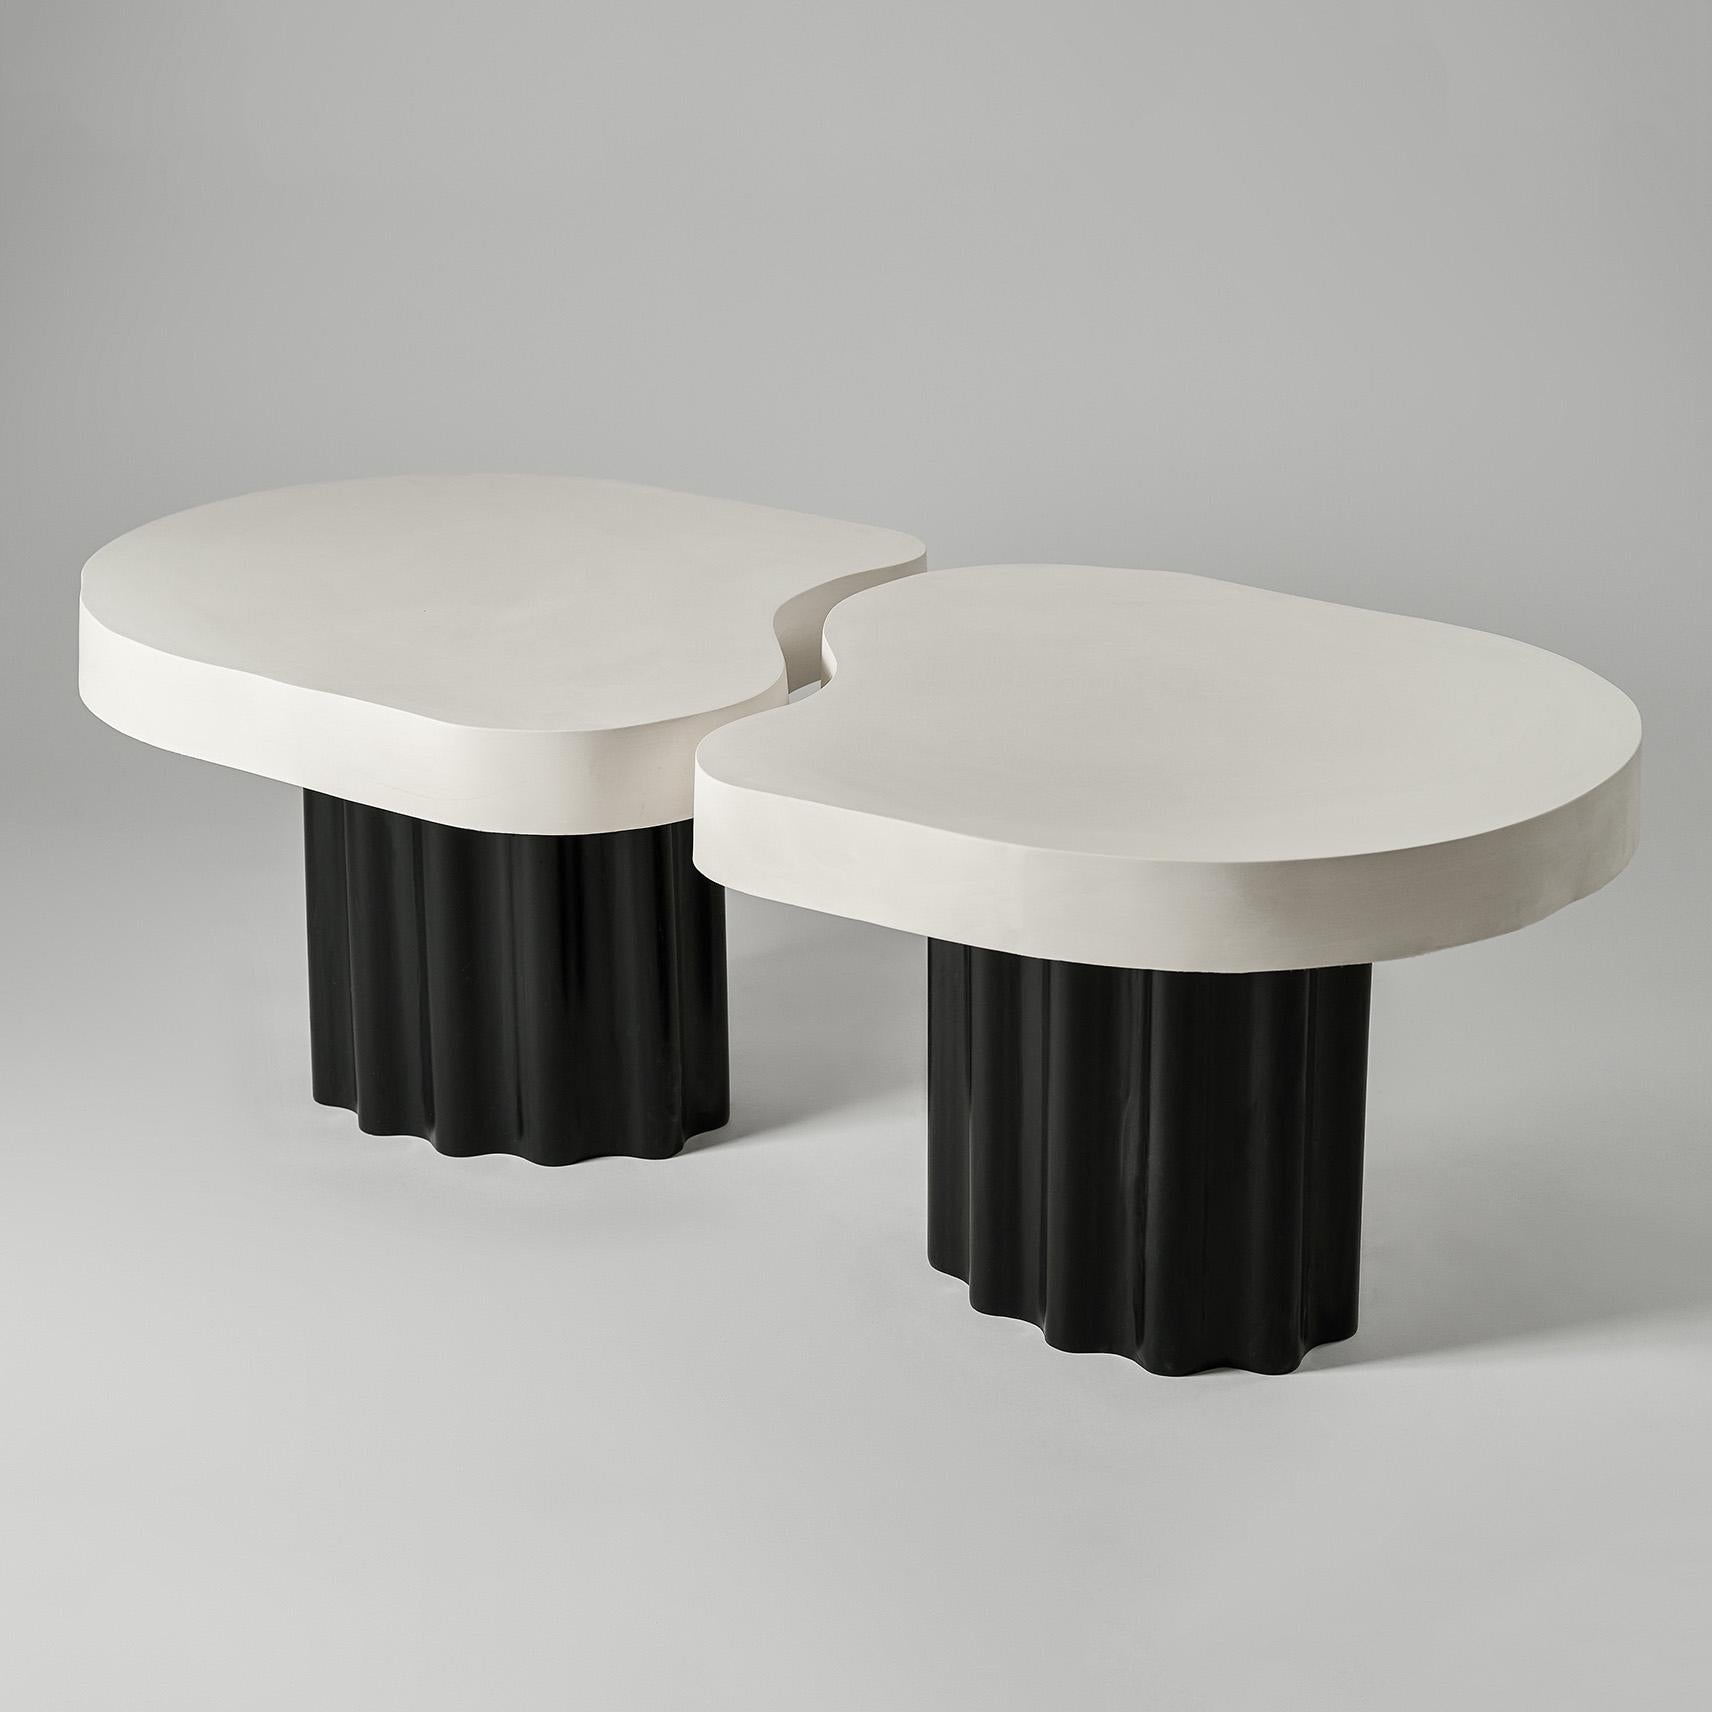 Ensemble de 2 tables basses Organic Edge n° 2 de Perler
Dimensions : Une table : D 56 x L 65 x H 40 cm.
Les deux tables : D 58 x L 120 x H 40 cm.
MATERIAL : Jesmonite.
Poids d'une seule table : 15-20 kg.

La hauteur de ces tables est